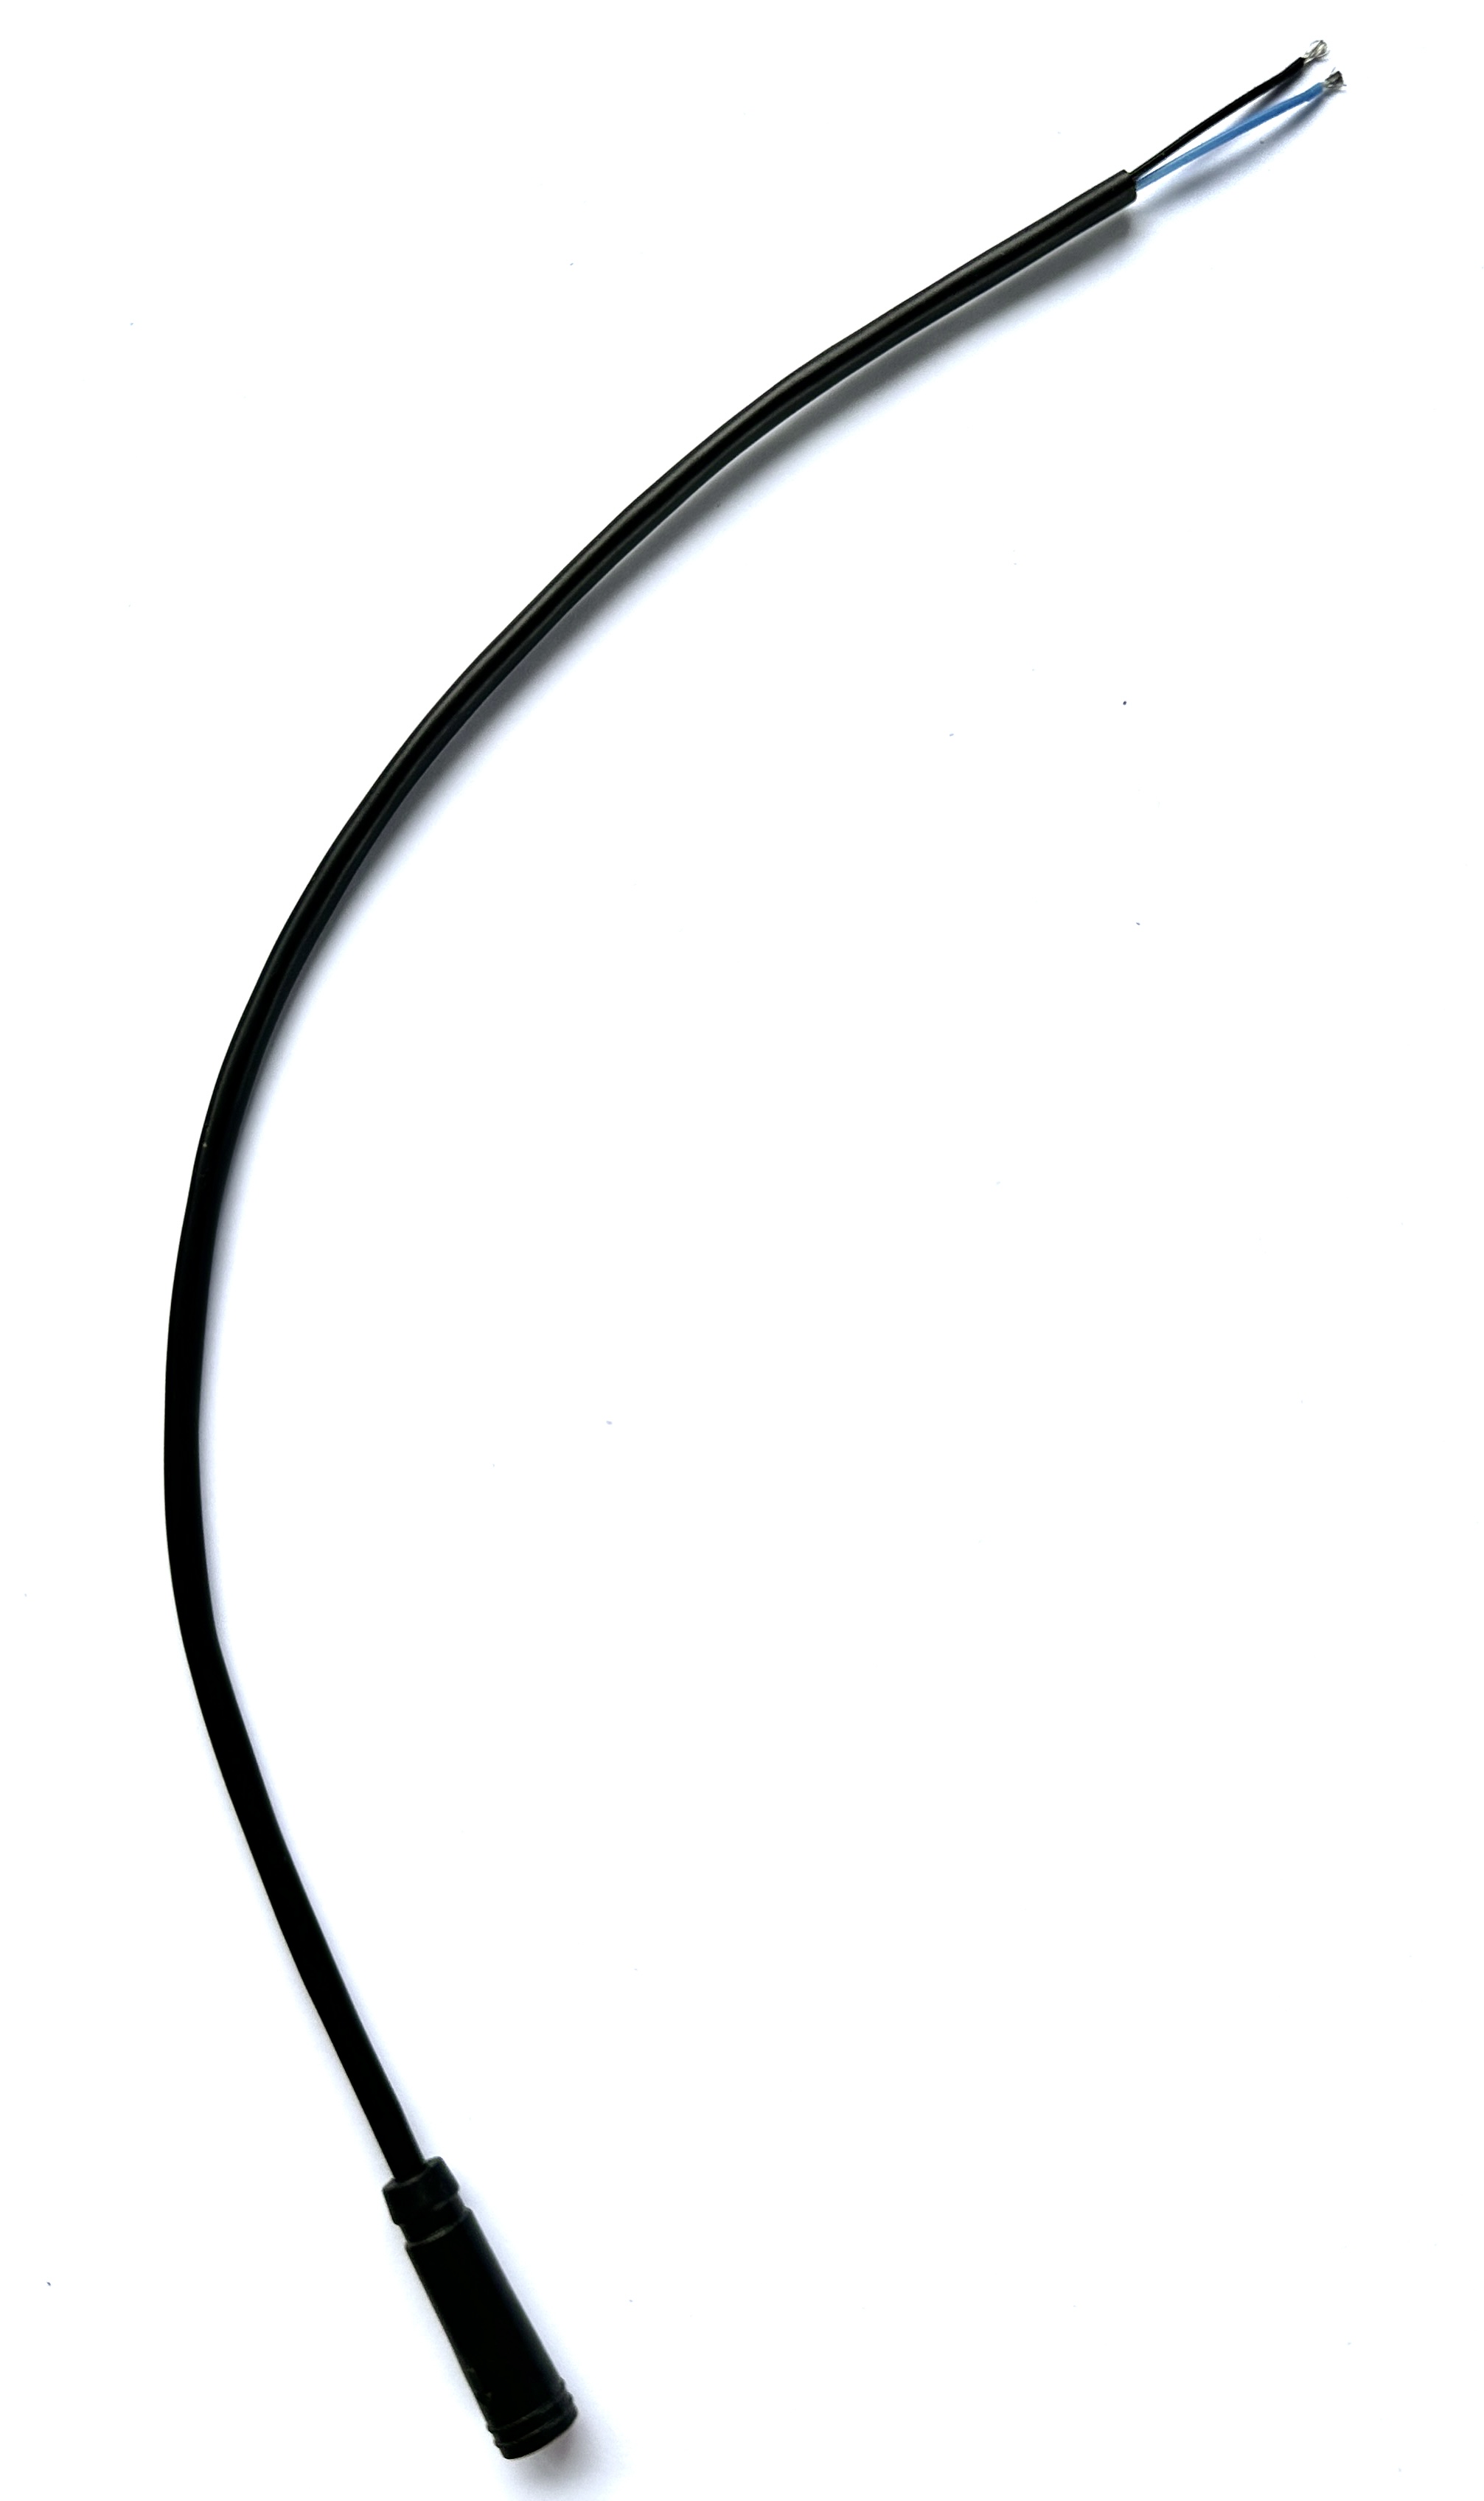 HIGO / Julet cable de extensión de 30 cm para ebike, 2 PIN hembra